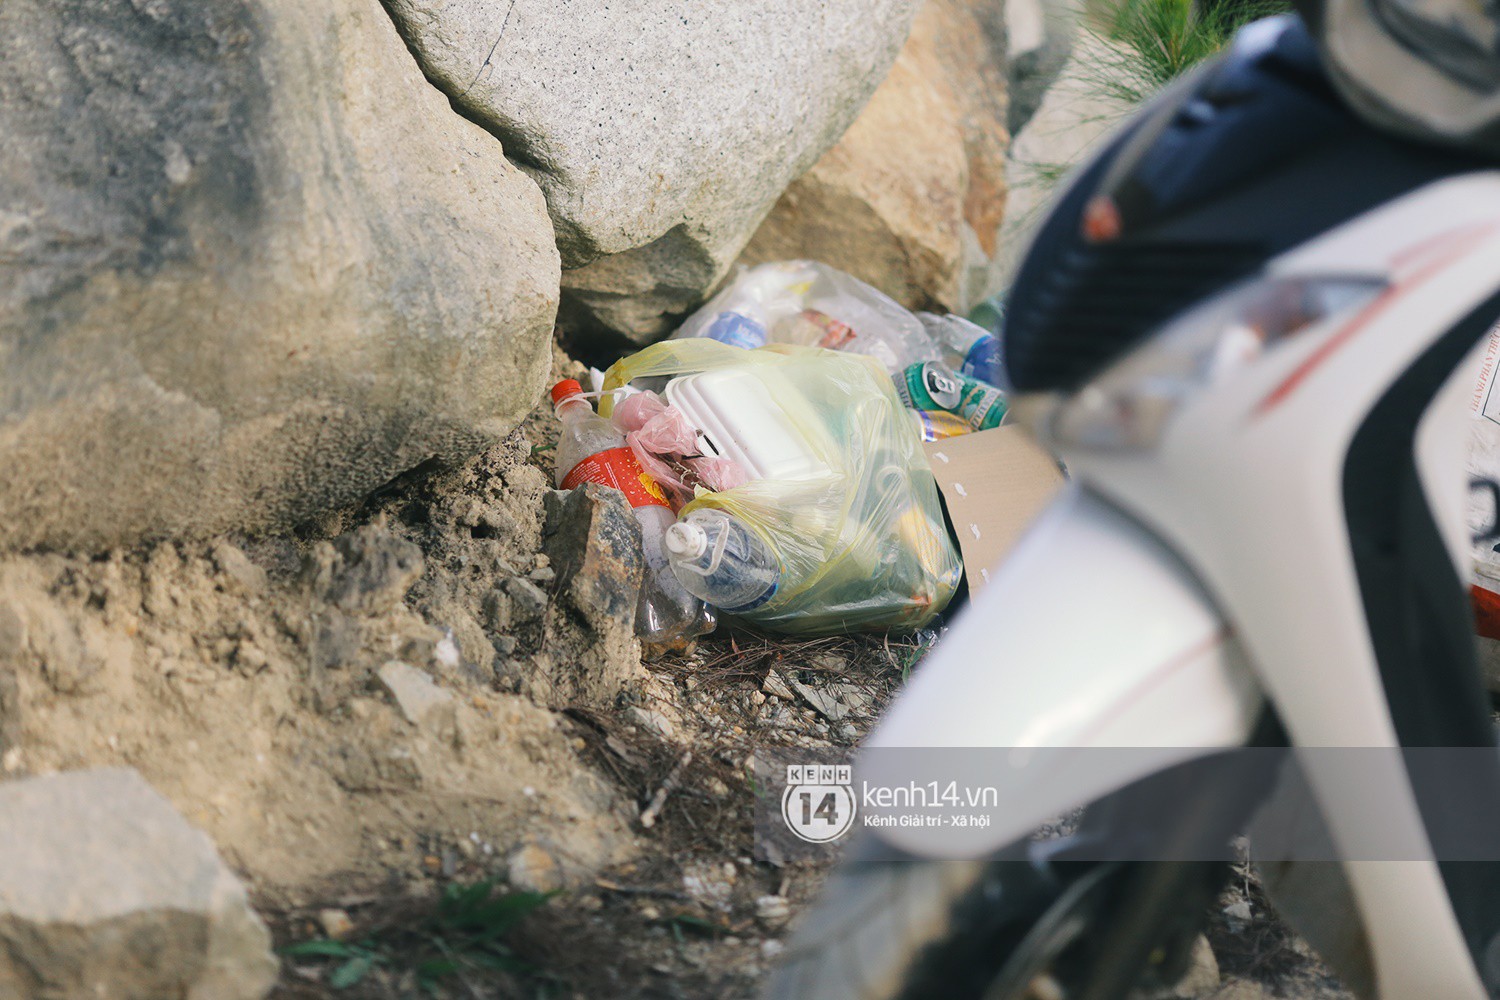 Nhiều bạn trẻ kéo đến Tuyệt tình cốc ở Đà Lạt để check-in dịp Tết, rác thải bắt đầu xuất hiện - Ảnh 10.